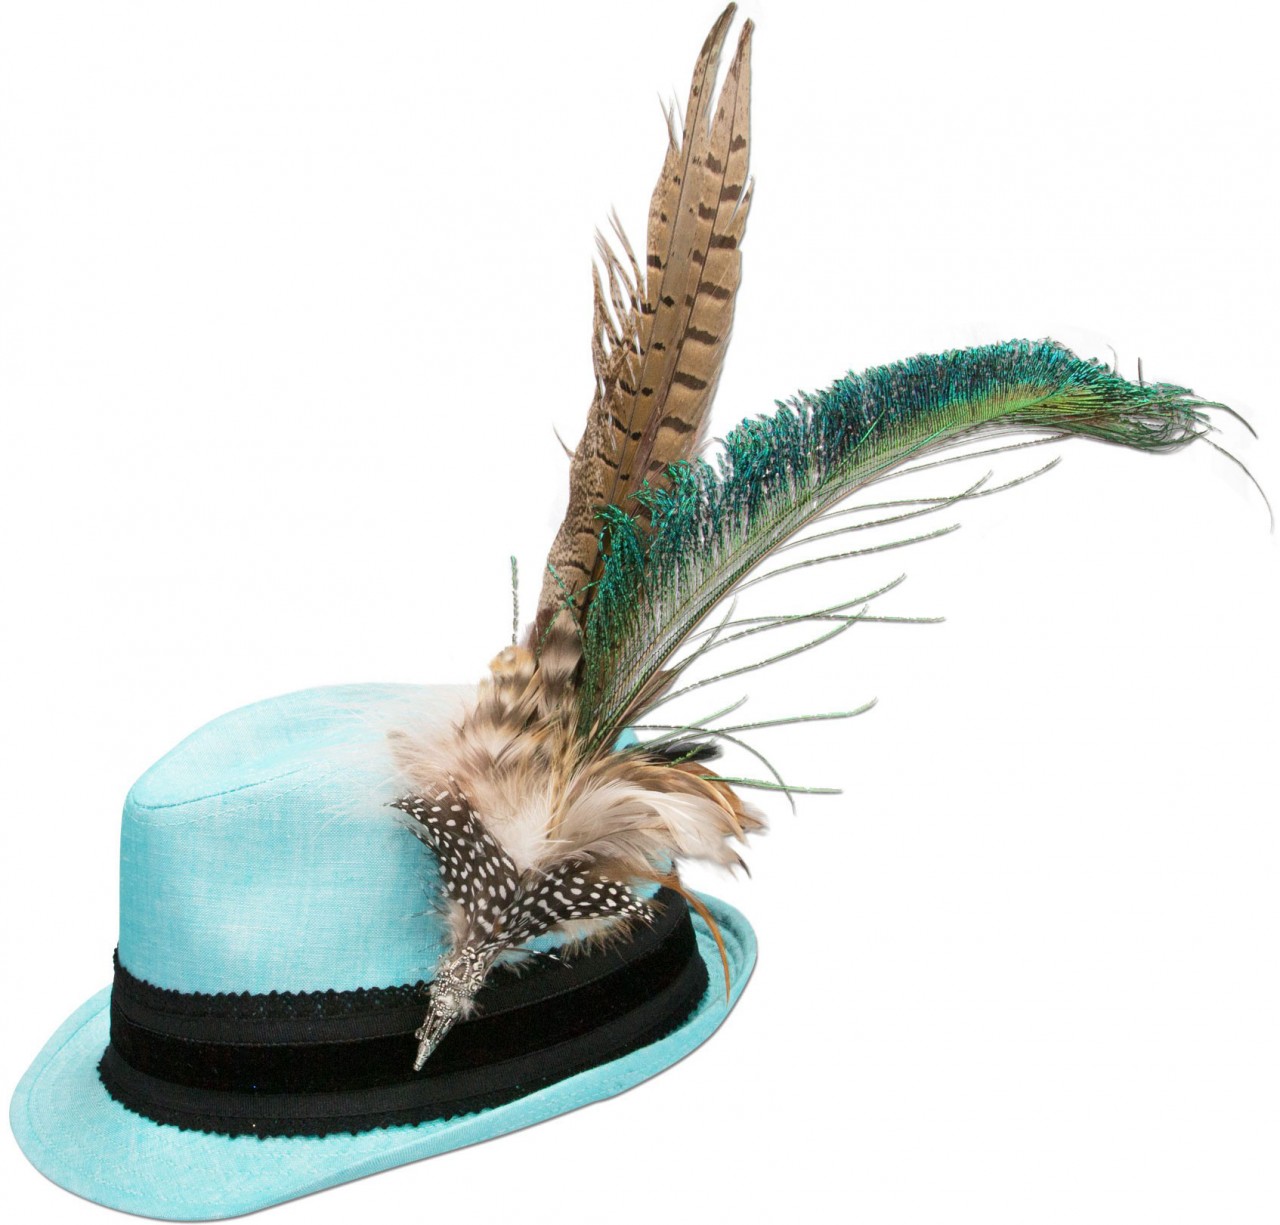 Aperçu: Chapeau en lin plume de paon turquoise